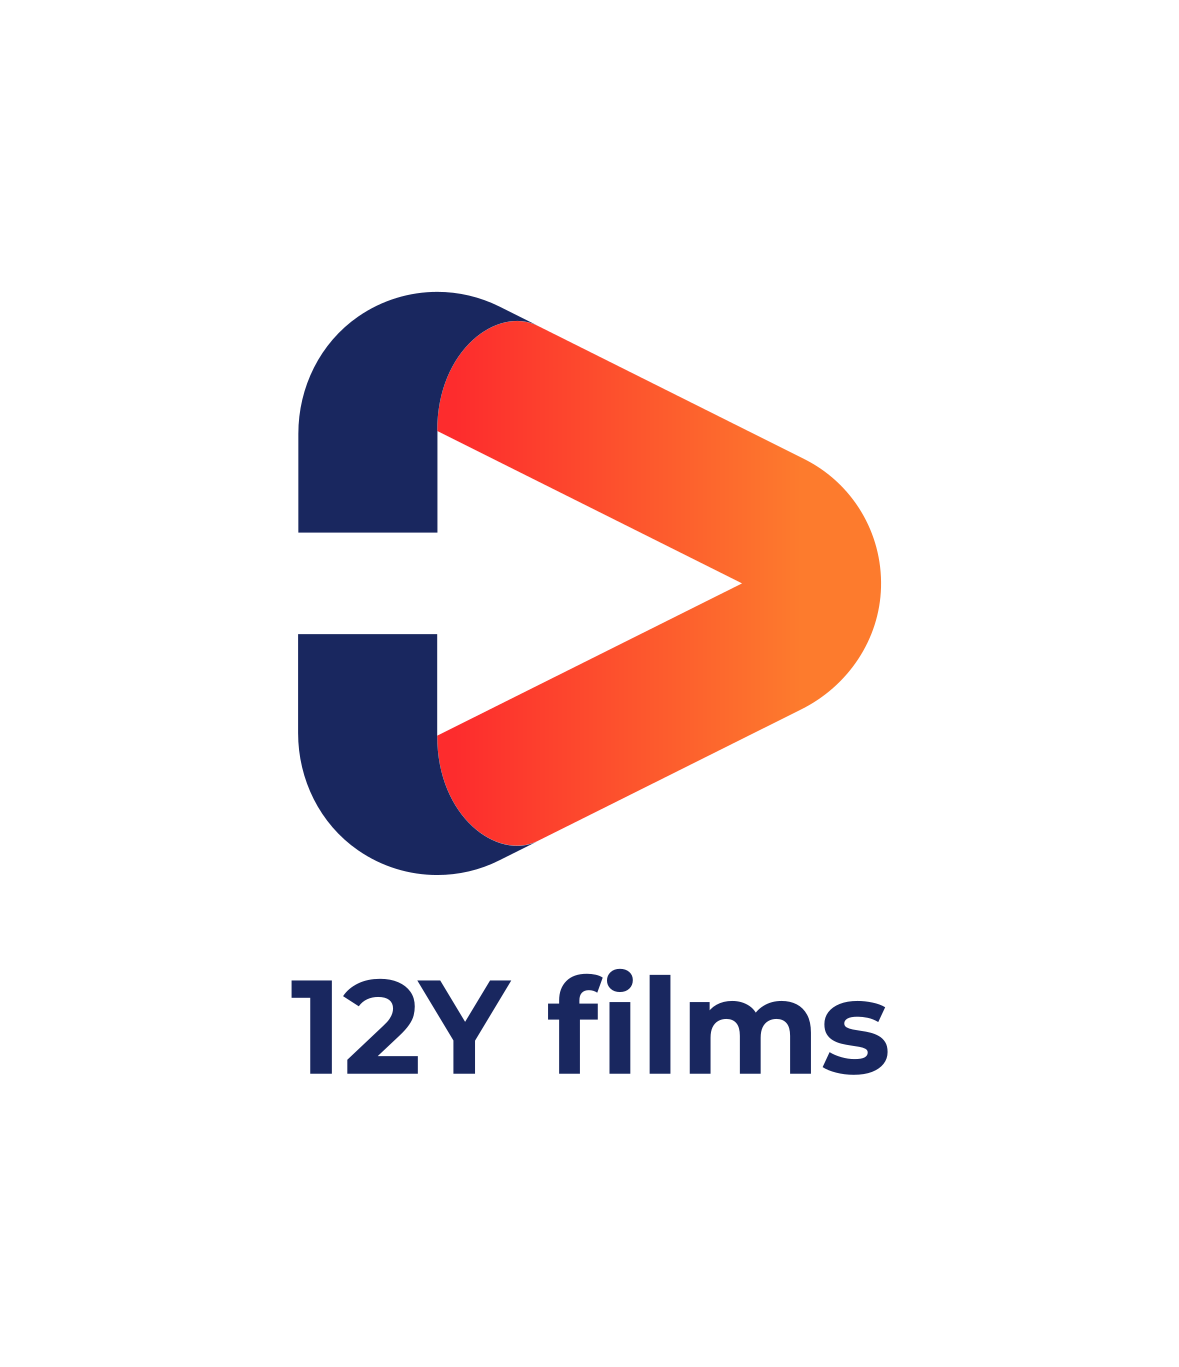 12YFilms